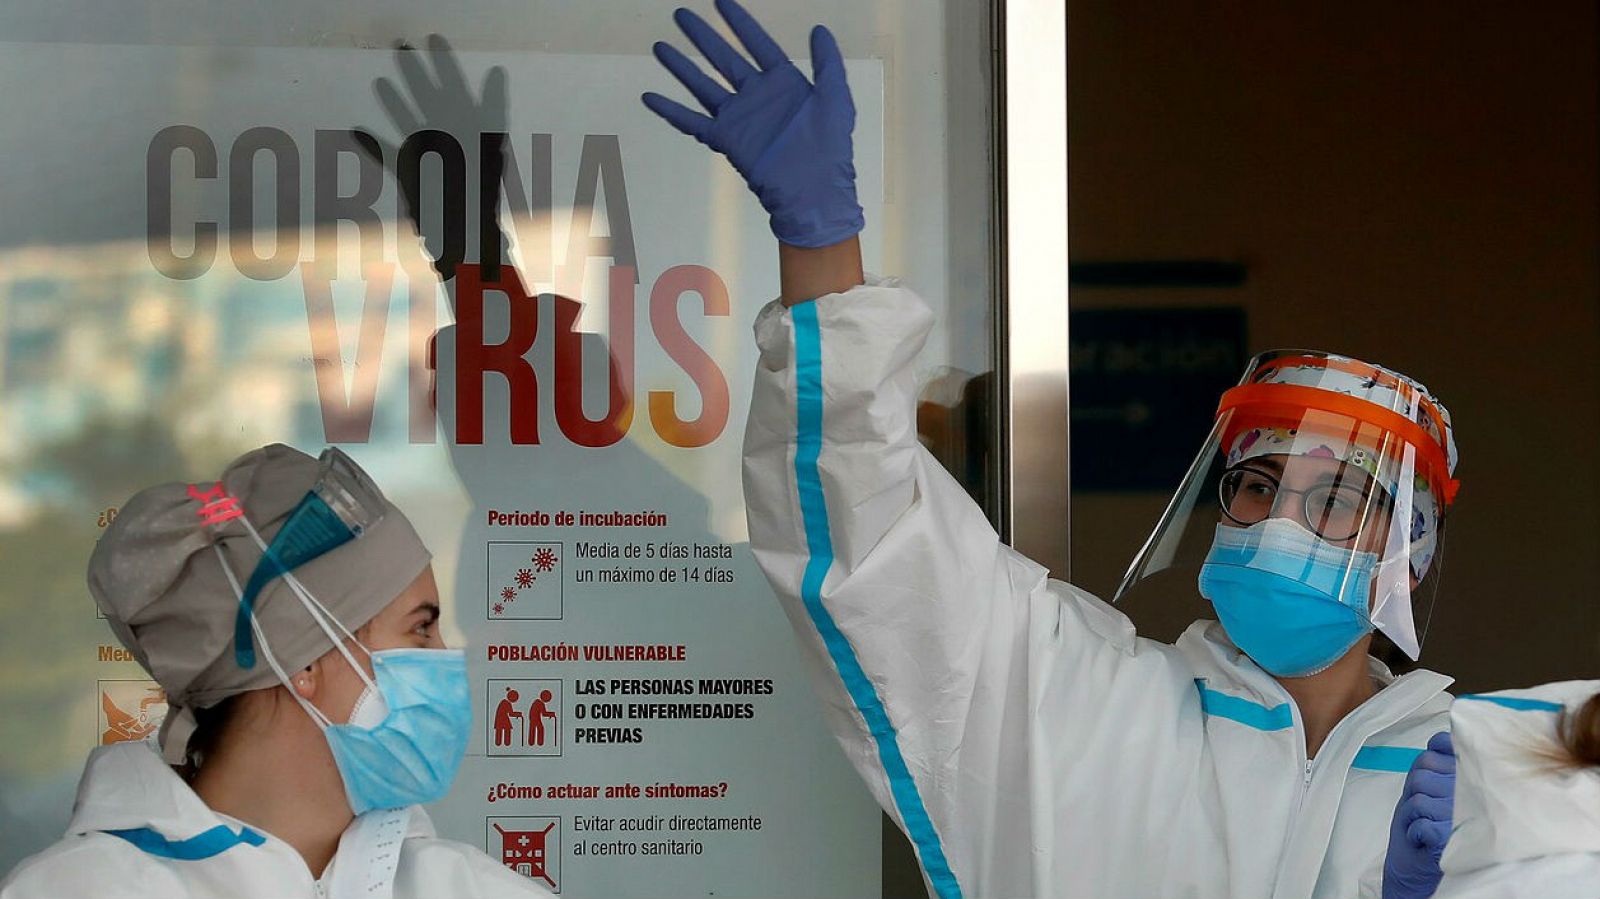 Los sanitarios exigen al Gobierno que detalle en qué hospitales se distribuyeron las mascarillas defectuosas  - RTVE.es